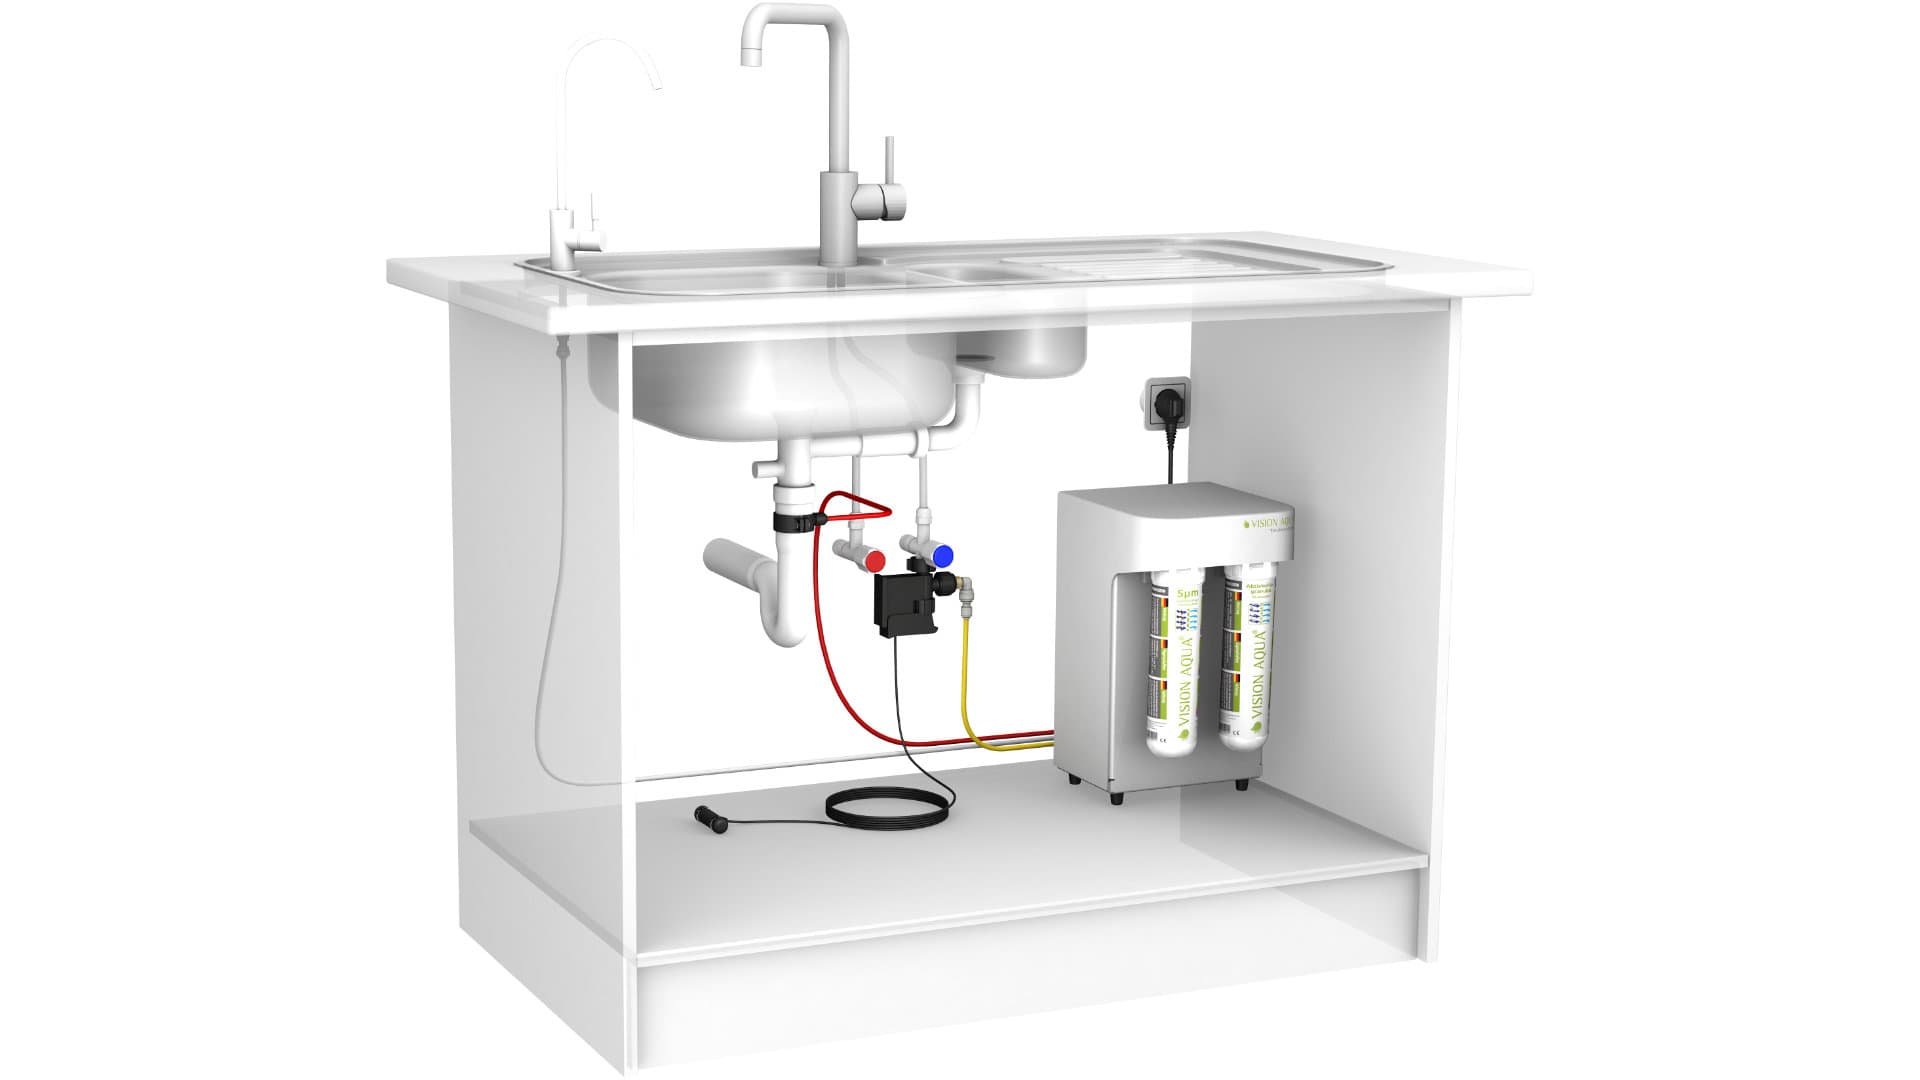 Beispielinstallation vom VA-Mini Wasserfilter unter der Küchenspüle als 3D Rendering